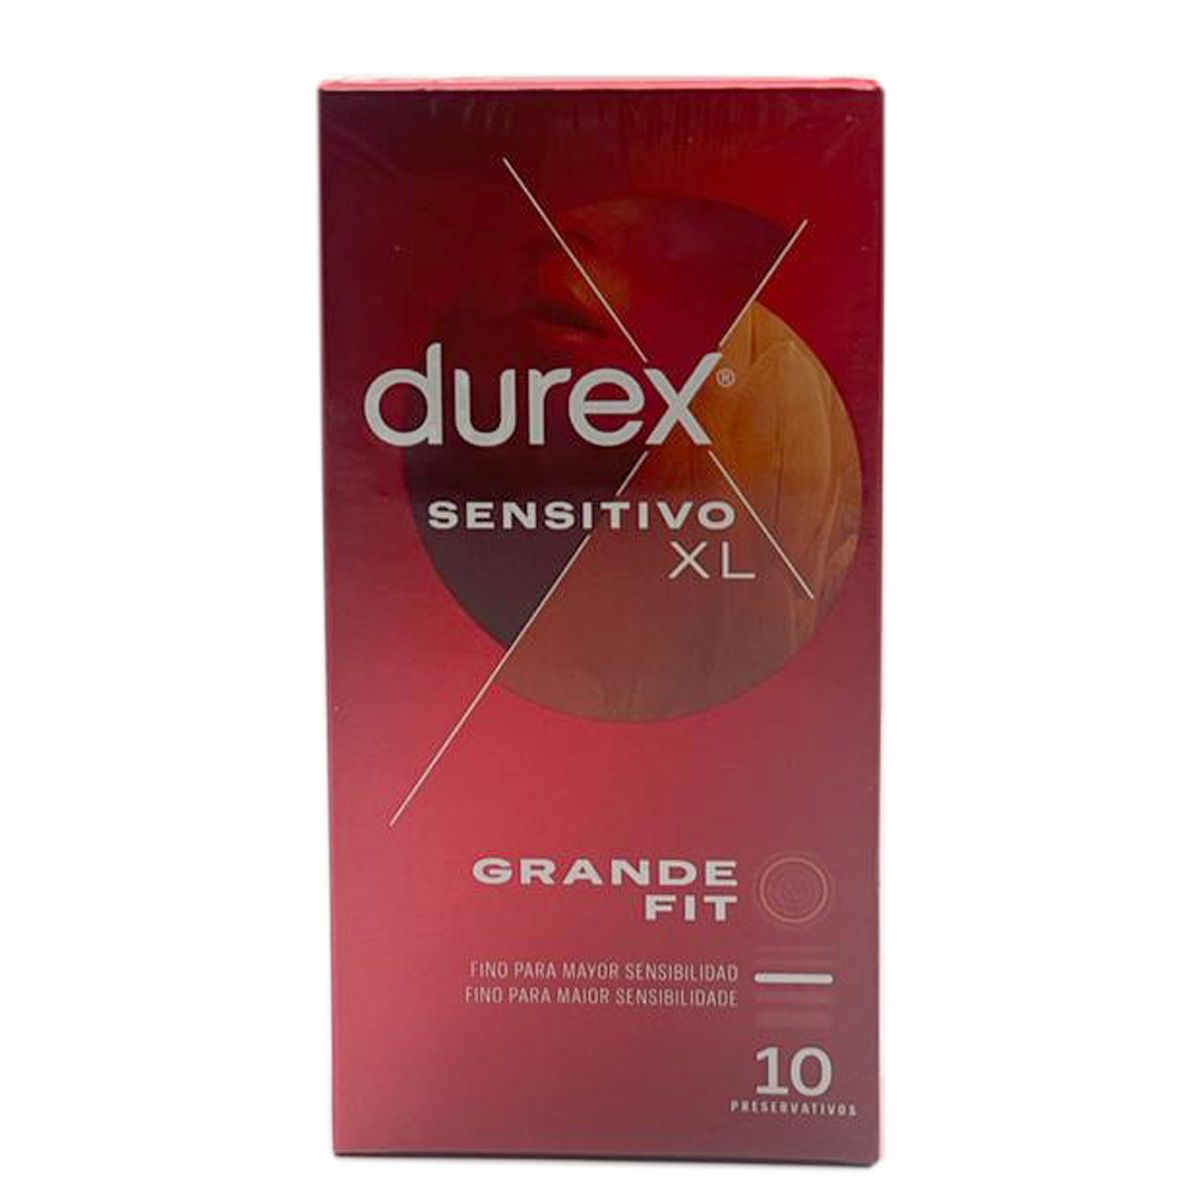 Comprar Durex Natural XL 12 Preservativos a precio online